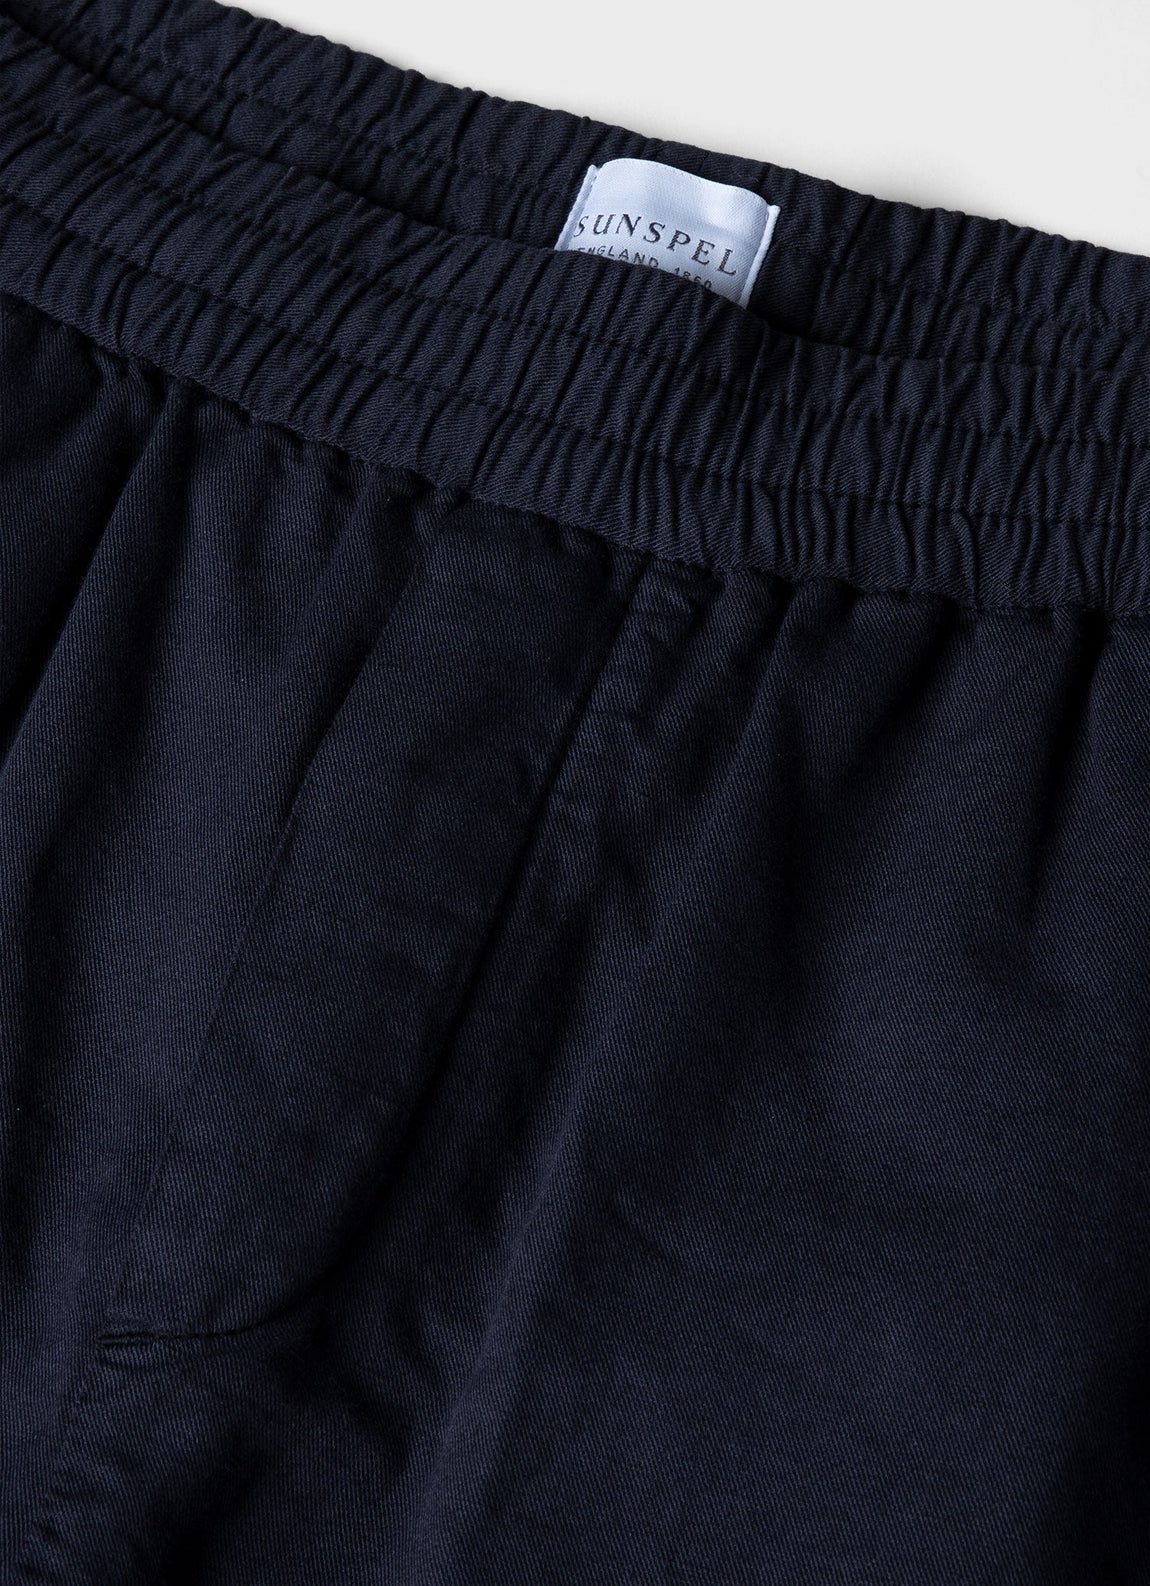 Men's Cotton Linen Drawstring Trouser in Navy